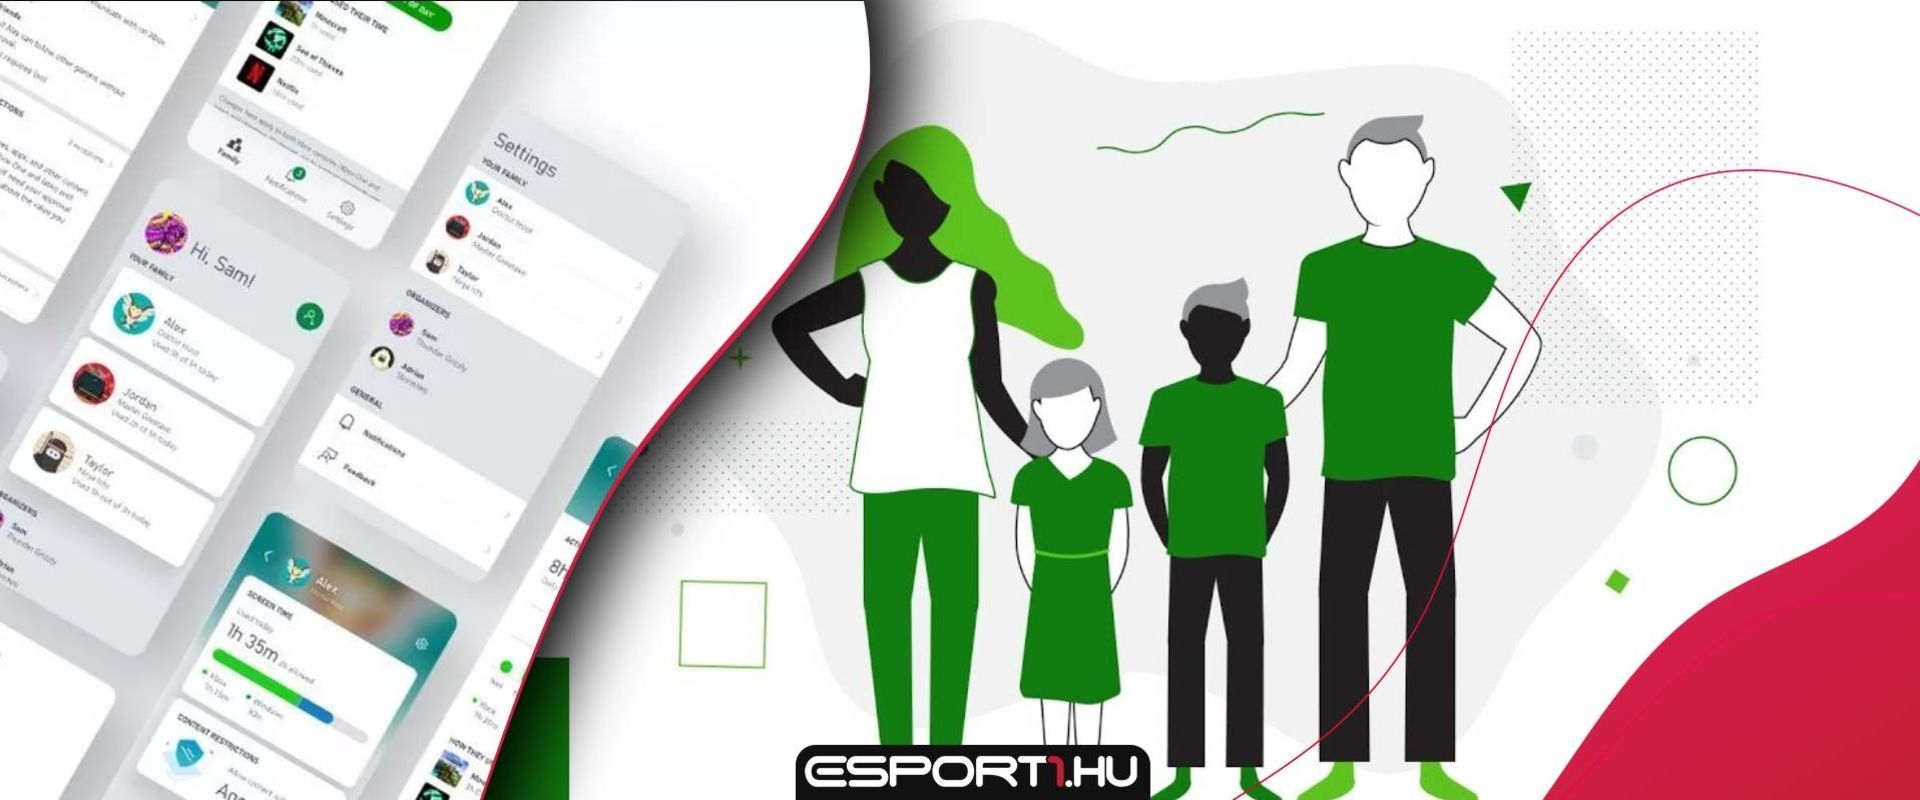 Mobilon követhetik a szülők, hogy a gyerekük mivel és mennyit játszik Xbox-on